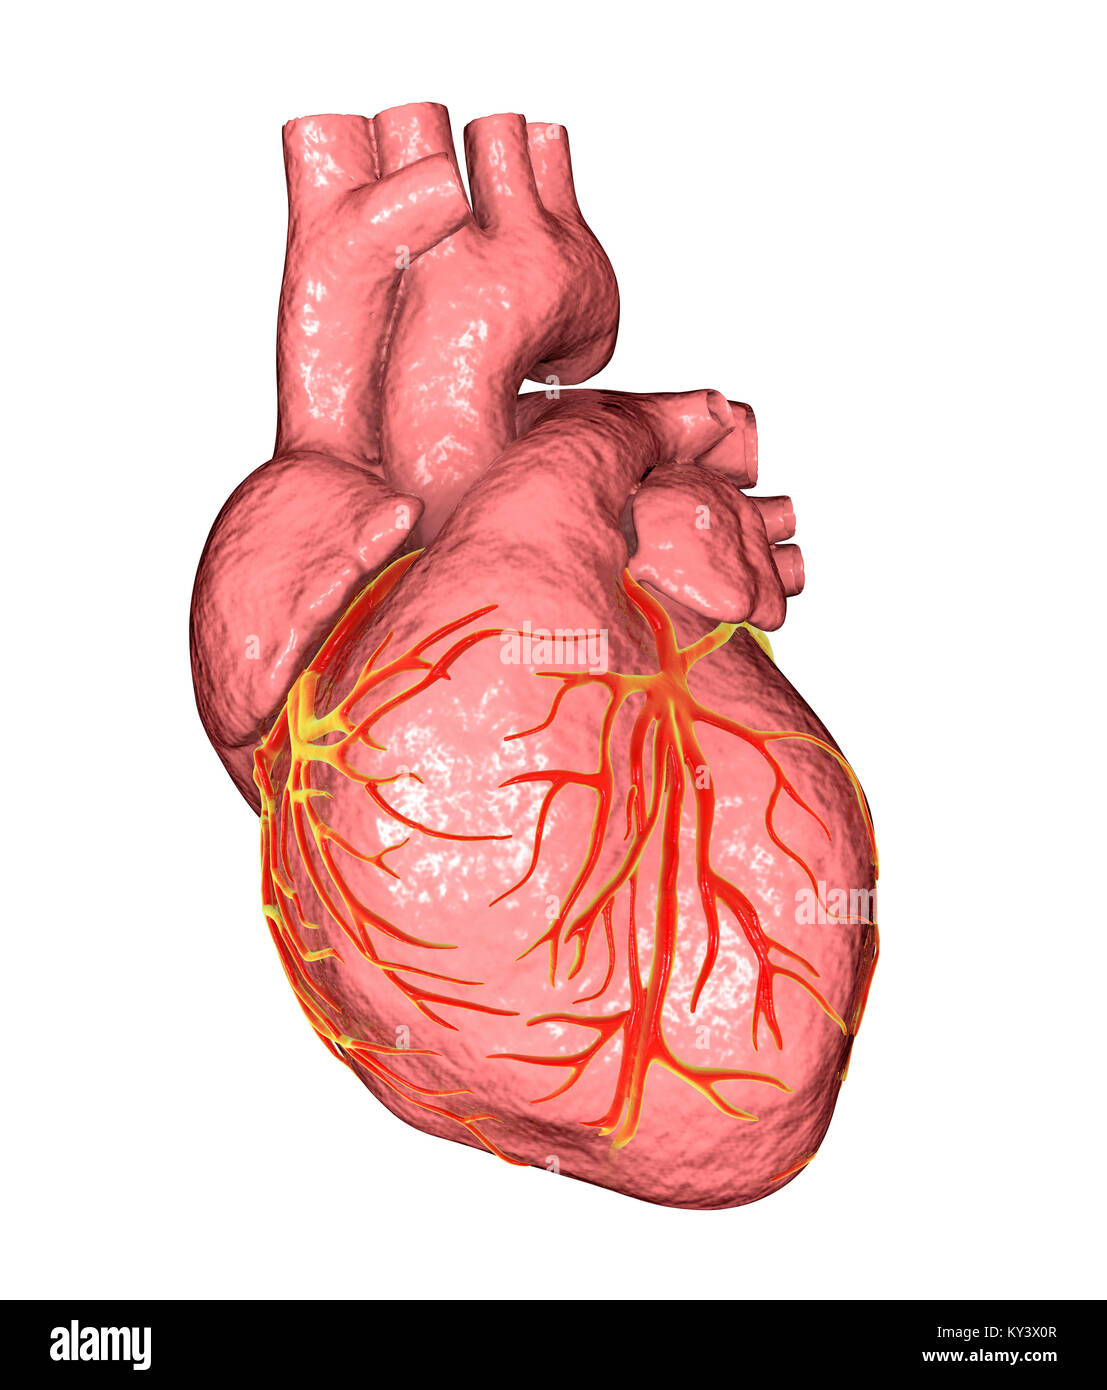 Heart,ordinateur illustration.Le coeur est un sac creux (cadre inférieur) des tissus musculaires qui pompe le sang autour du corps.Les petits vaisseaux sanguins coronaire surface fournir le muscle cardiaque en sang.Quatre grands vaisseaux sanguins (cadre supérieur) ramènent le sang de et du coeur.Depuis le coin supérieur gauche vers le centre droit ils sont : la veine cave (le retour veineux du sang désoxygéné du corps) ; l'aorte (artère par laquelle le sang oxygéné est pompée à l'organisme) ; l'artère pulmonaire (par lequel le sang désoxygéné est pompé dans les poumons) Banque D'Images